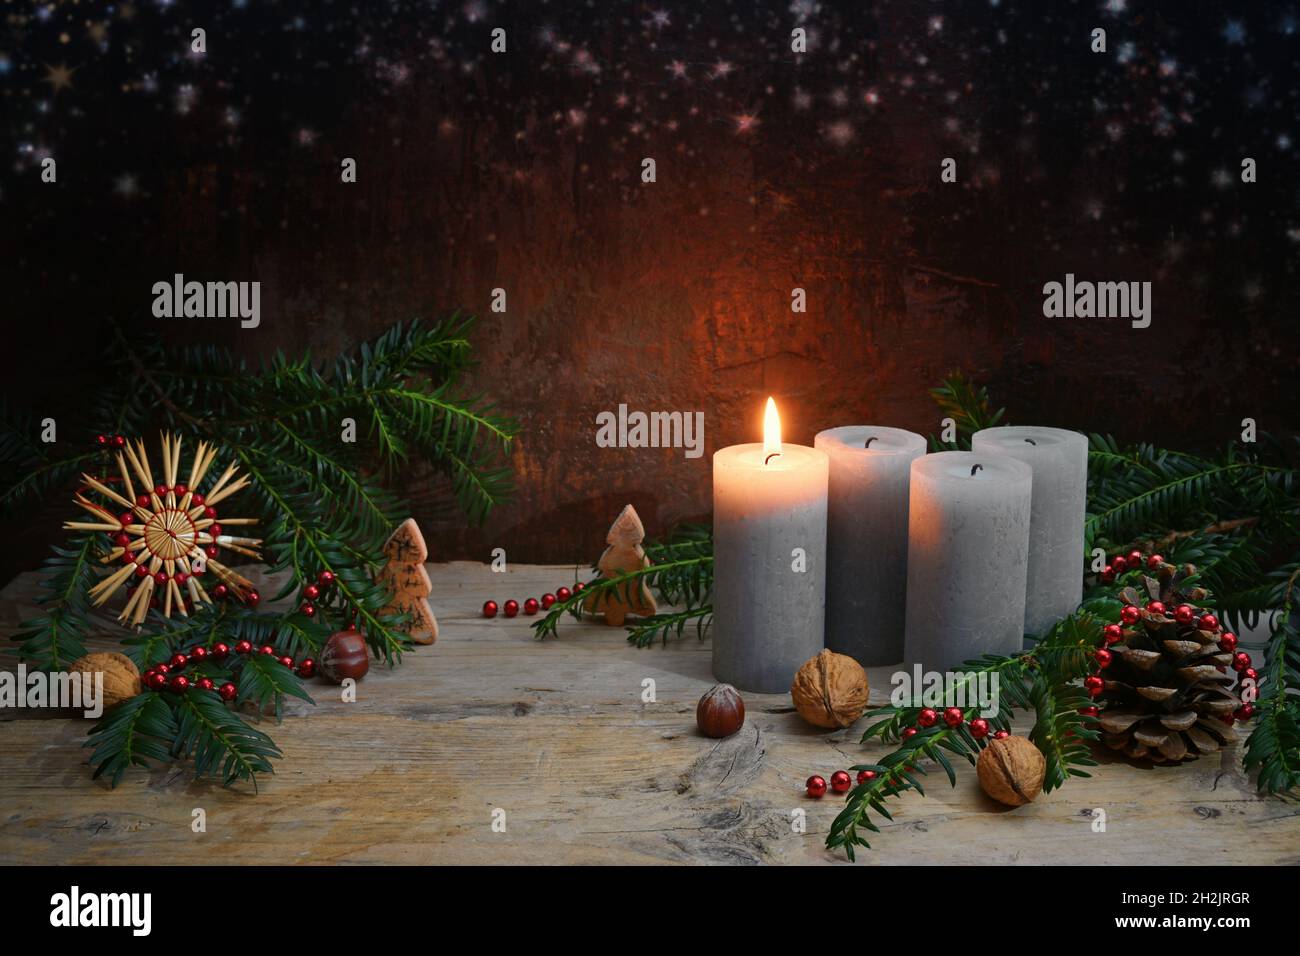 Beim ersten Advent wird eine von vier Kerzen angezündet, Weihnachtsschmuck wie Nüsse, Strohstern, Zapfen und Tannenzweigen auf rustikalem Holz gegen ein dunkelbraunes b Stockfoto